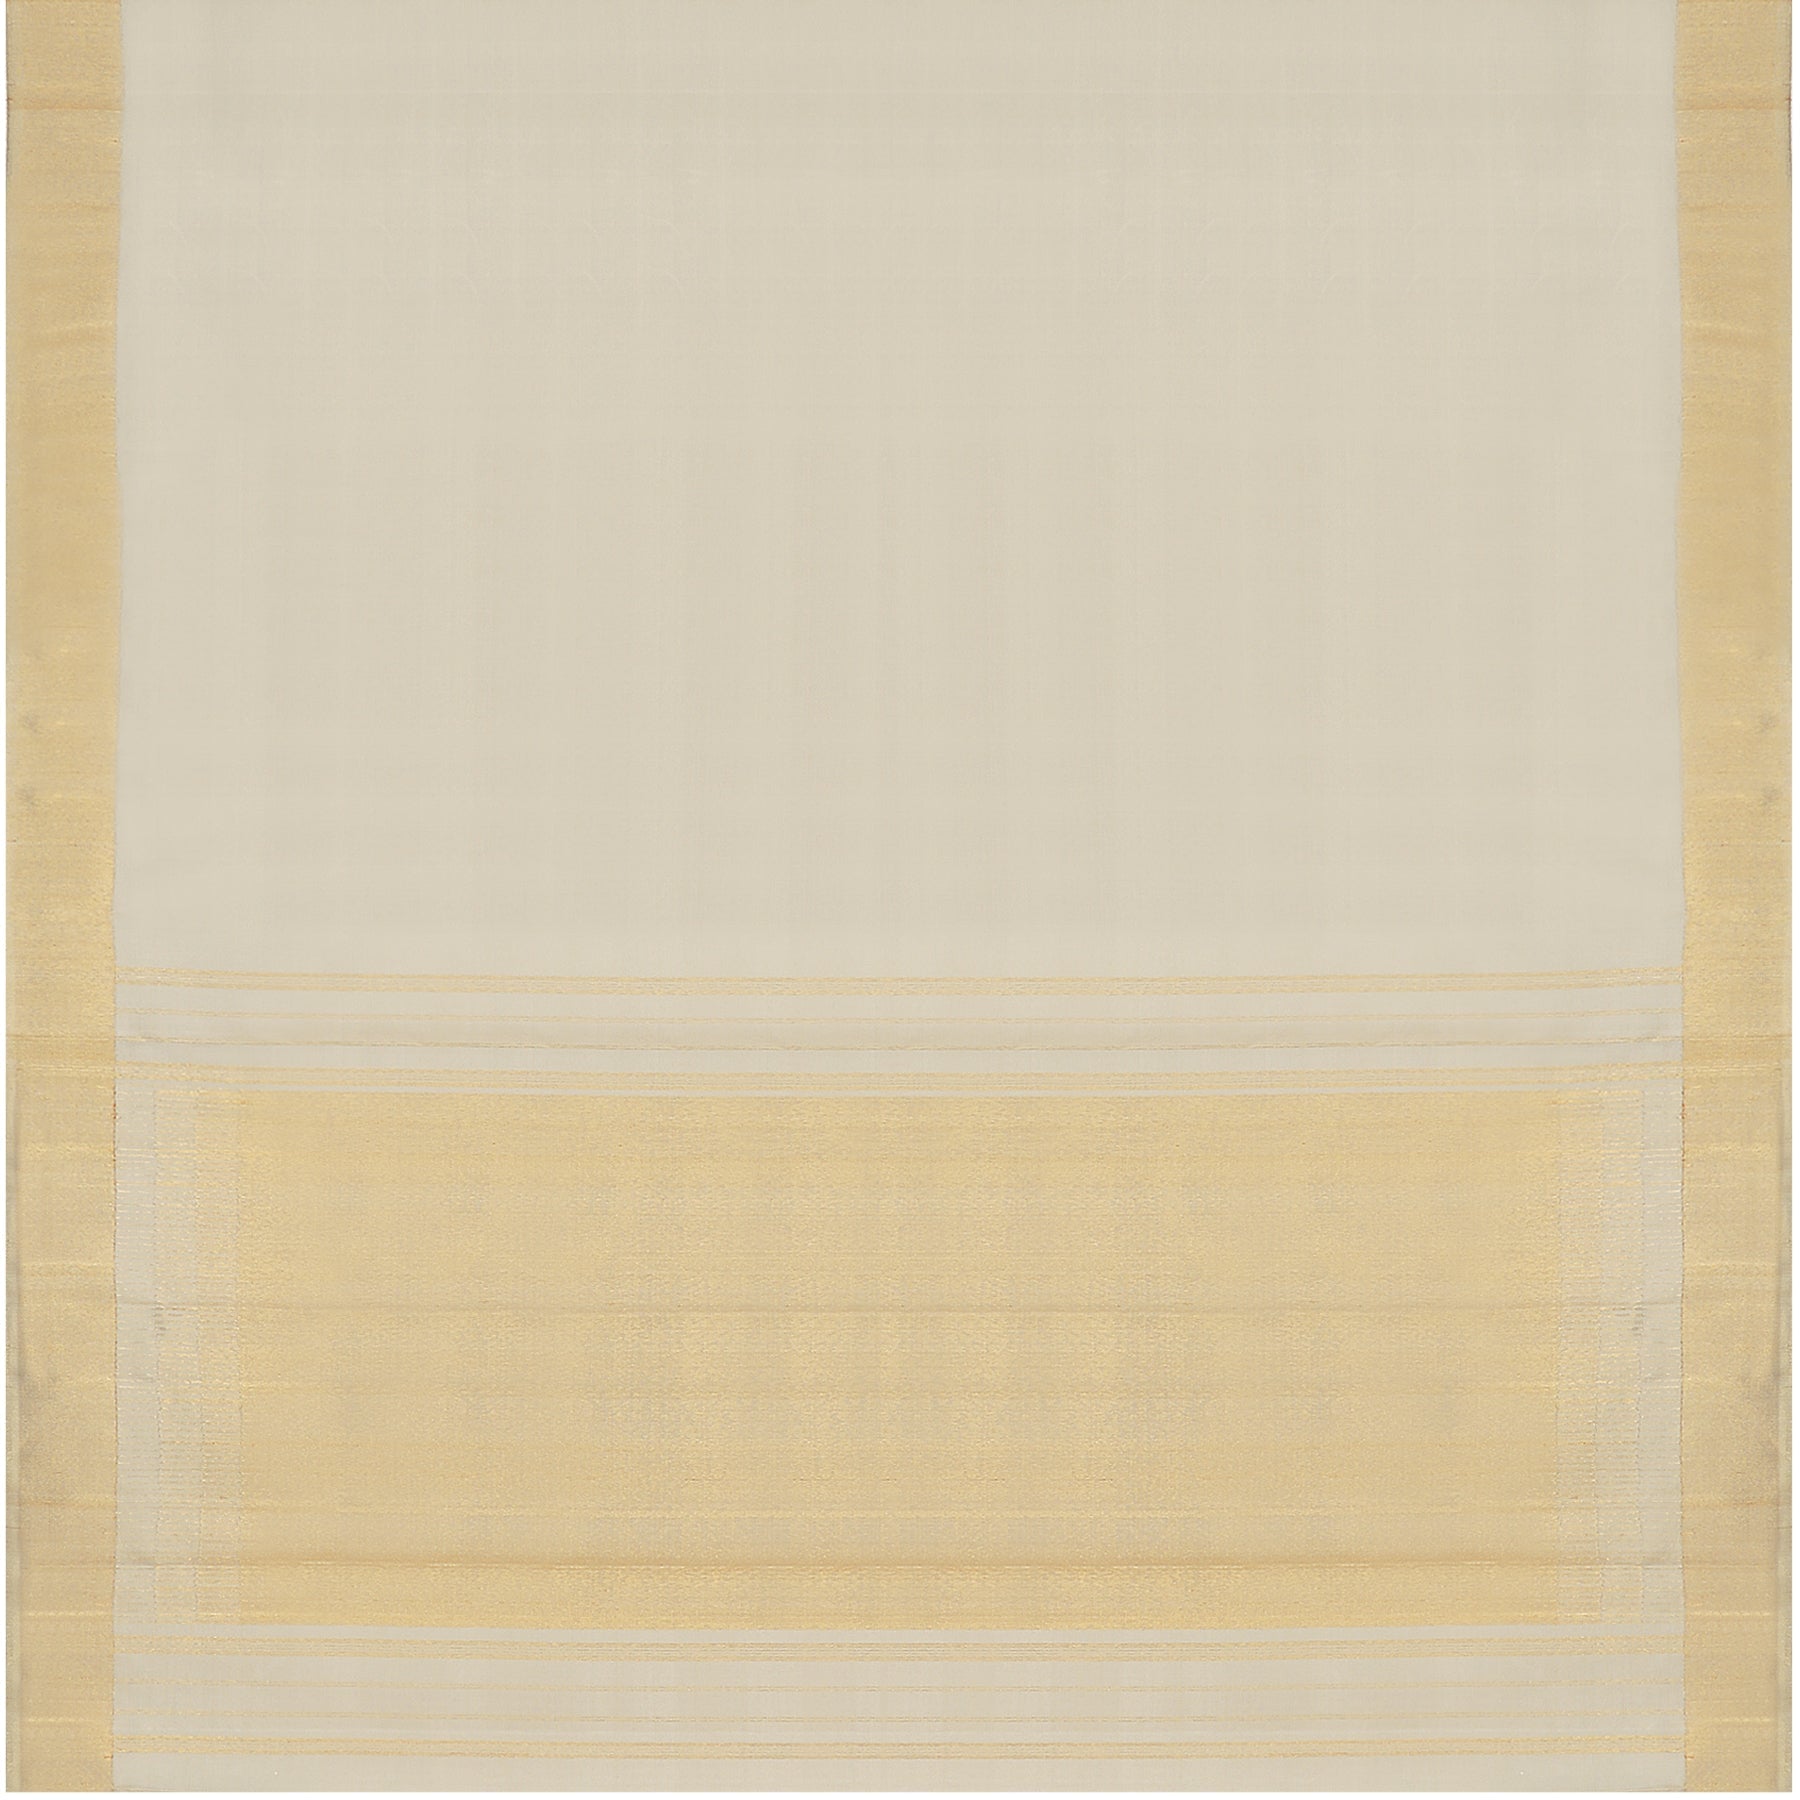 Kanakavalli Kanjivaram Silk Sari 23-611-HS001-04553 - Full View